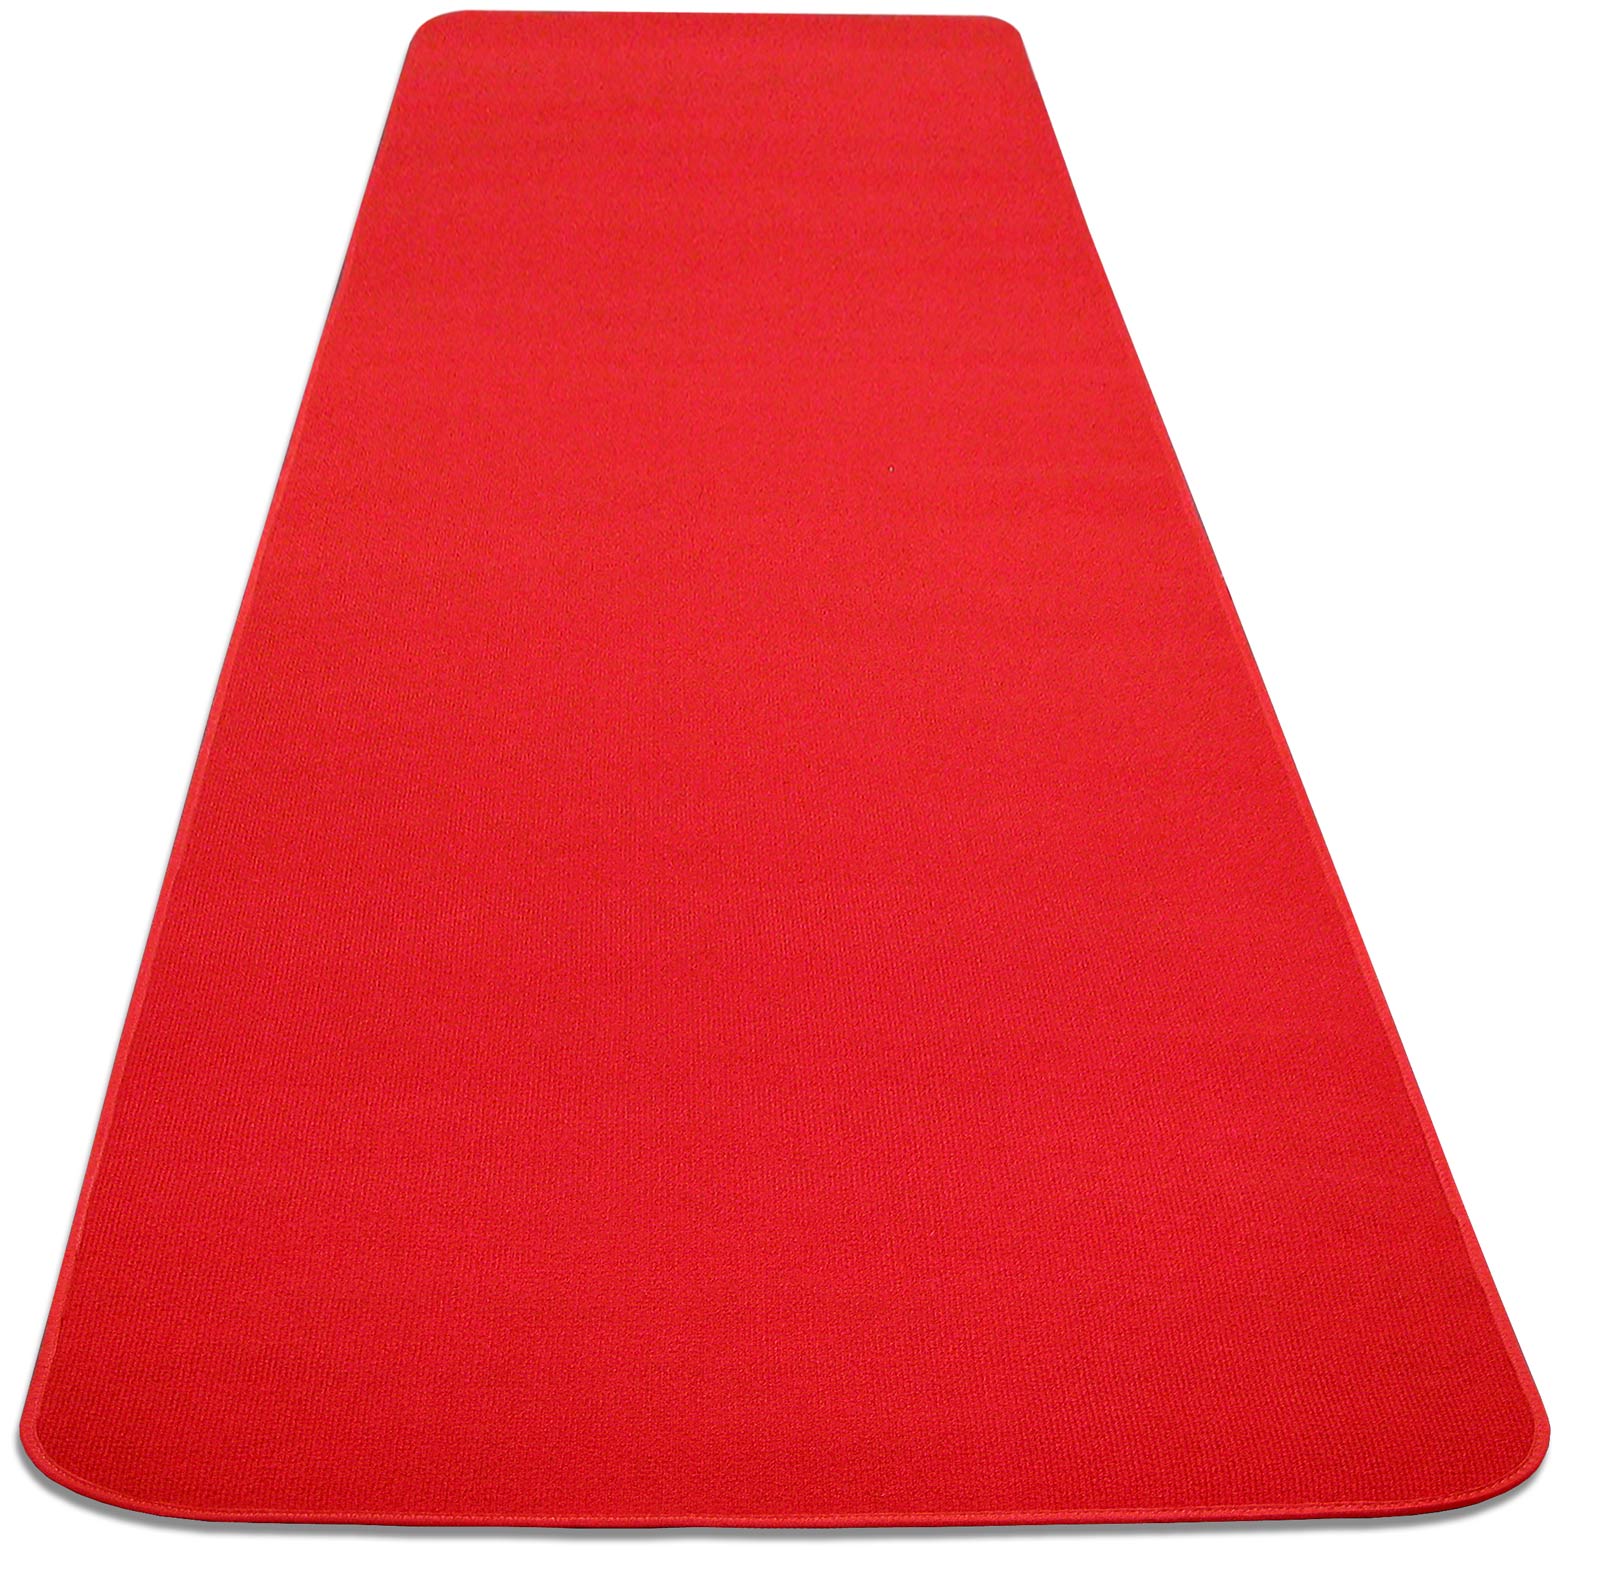 Red Event Carpet Aisle Runner 4ft Wide x 15ft Long